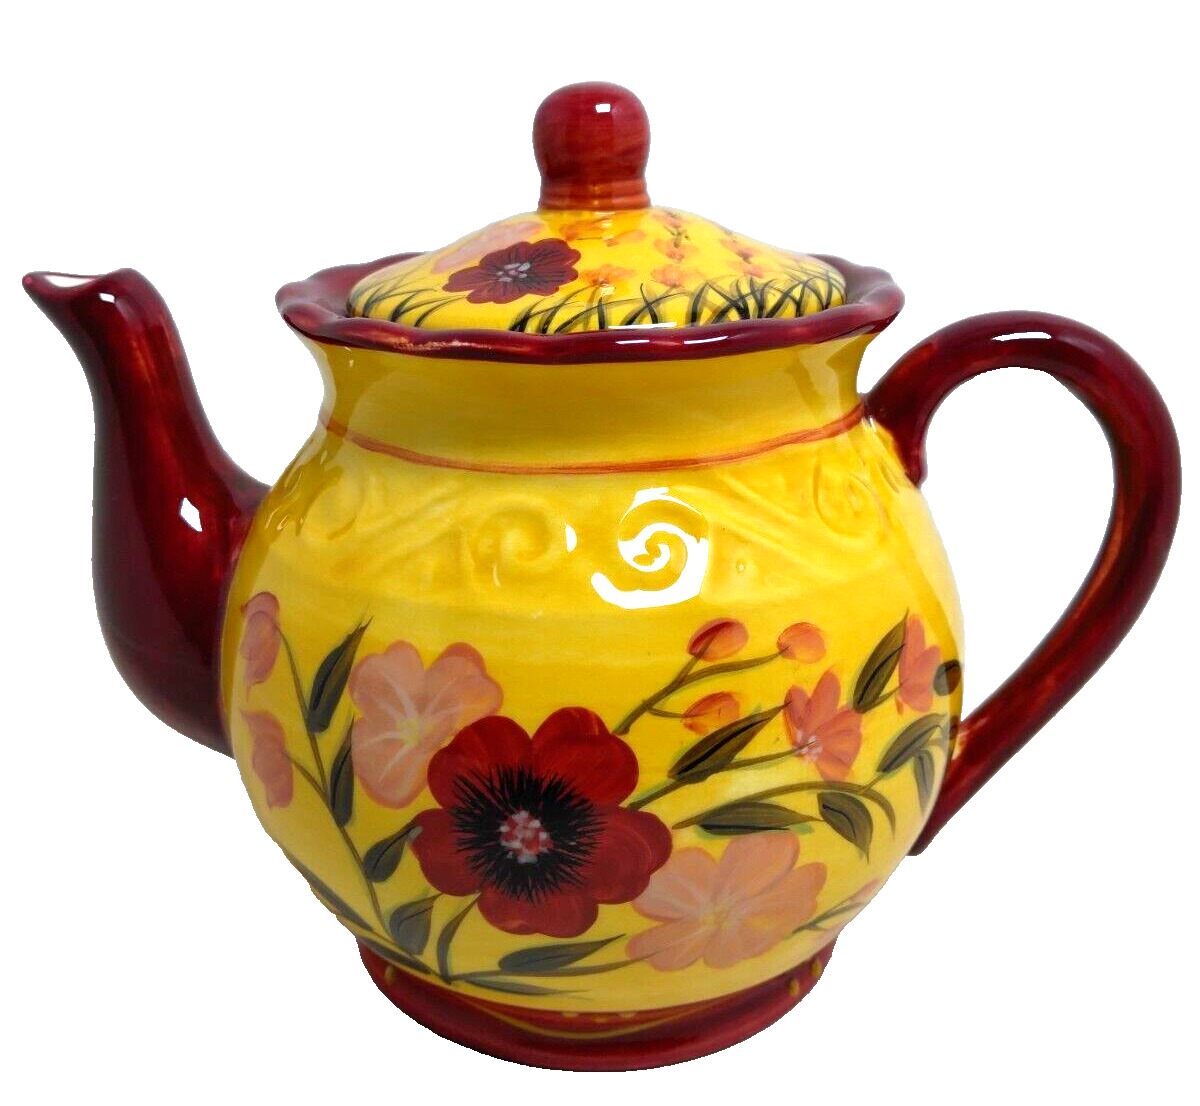 Vintage Casa Vero By ACK Porcelain Teapot Multicolor English Garden Pattern